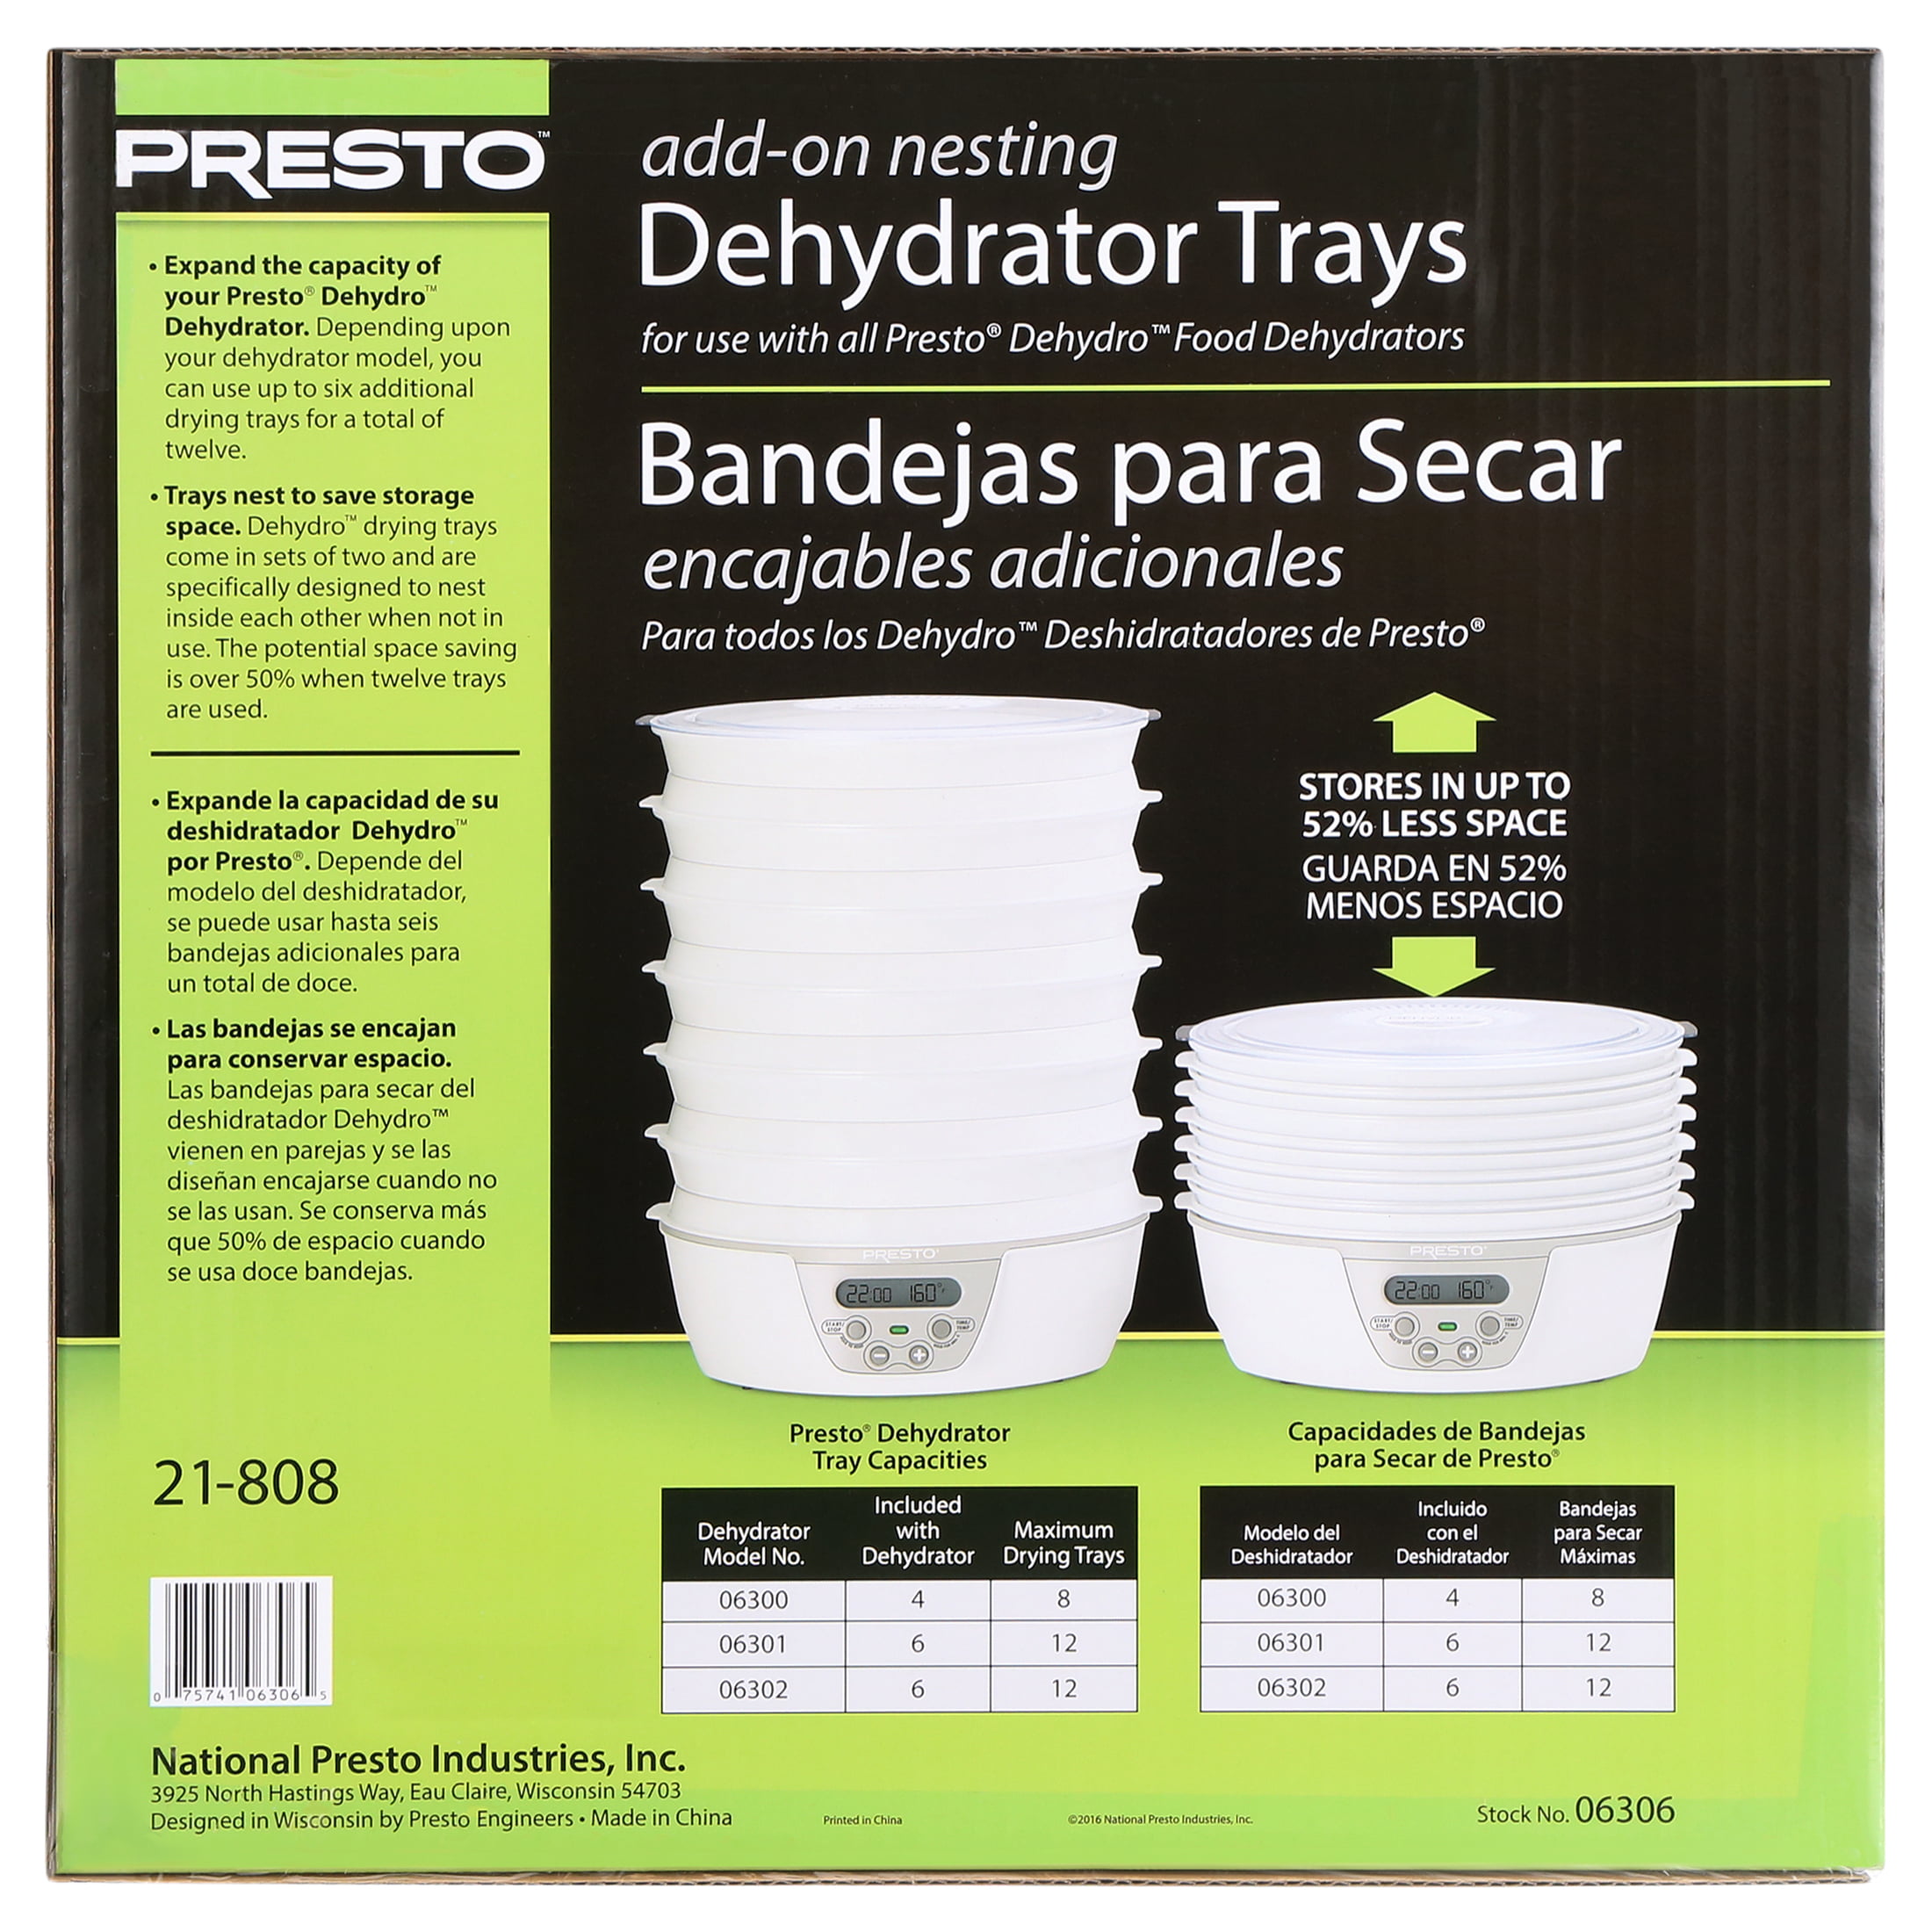 Add-On Nesting Dehydrator Trays